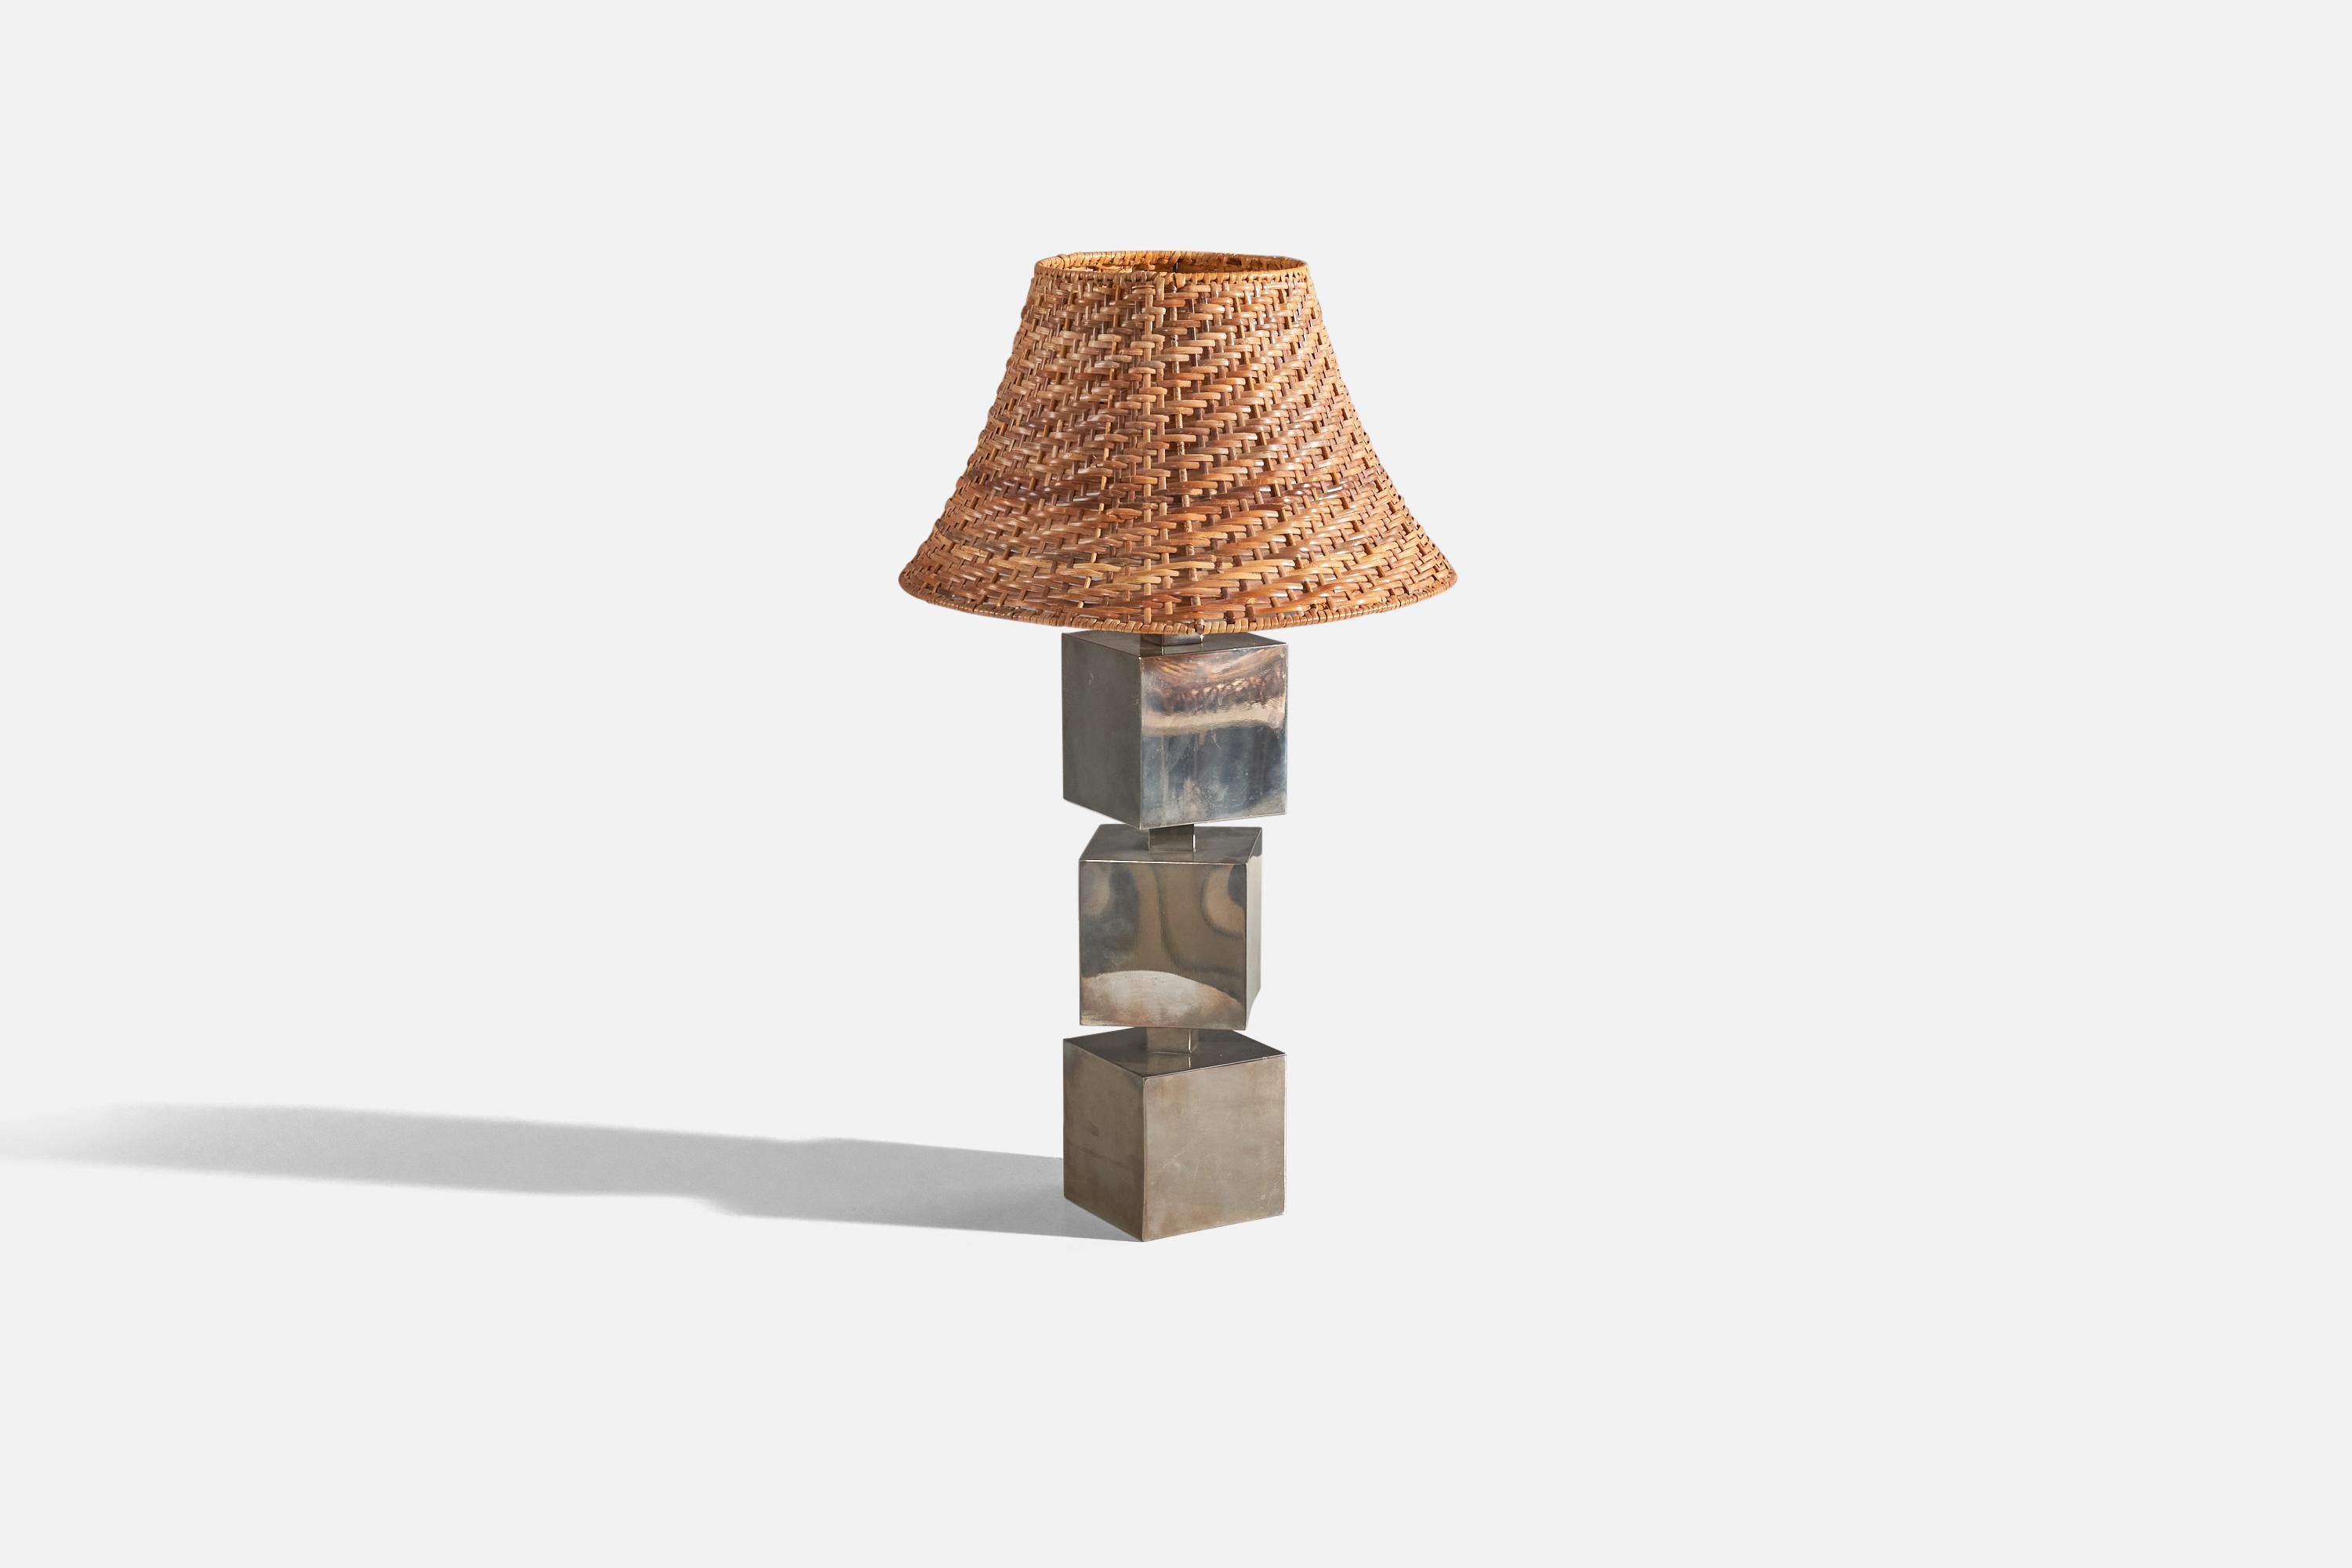 Lampe de table en métal et rotin conçue et produite en Italie, années 1960.

Vendu avec abat-jour. 
Dimensions de la lampe (pouces) : 19.87 x 6 x 6 (H x L x P)
Dimensions de l'abat-jour (pouces) : 7 x 14,25 x 9 (T x B x S)
Dimension de la lampe